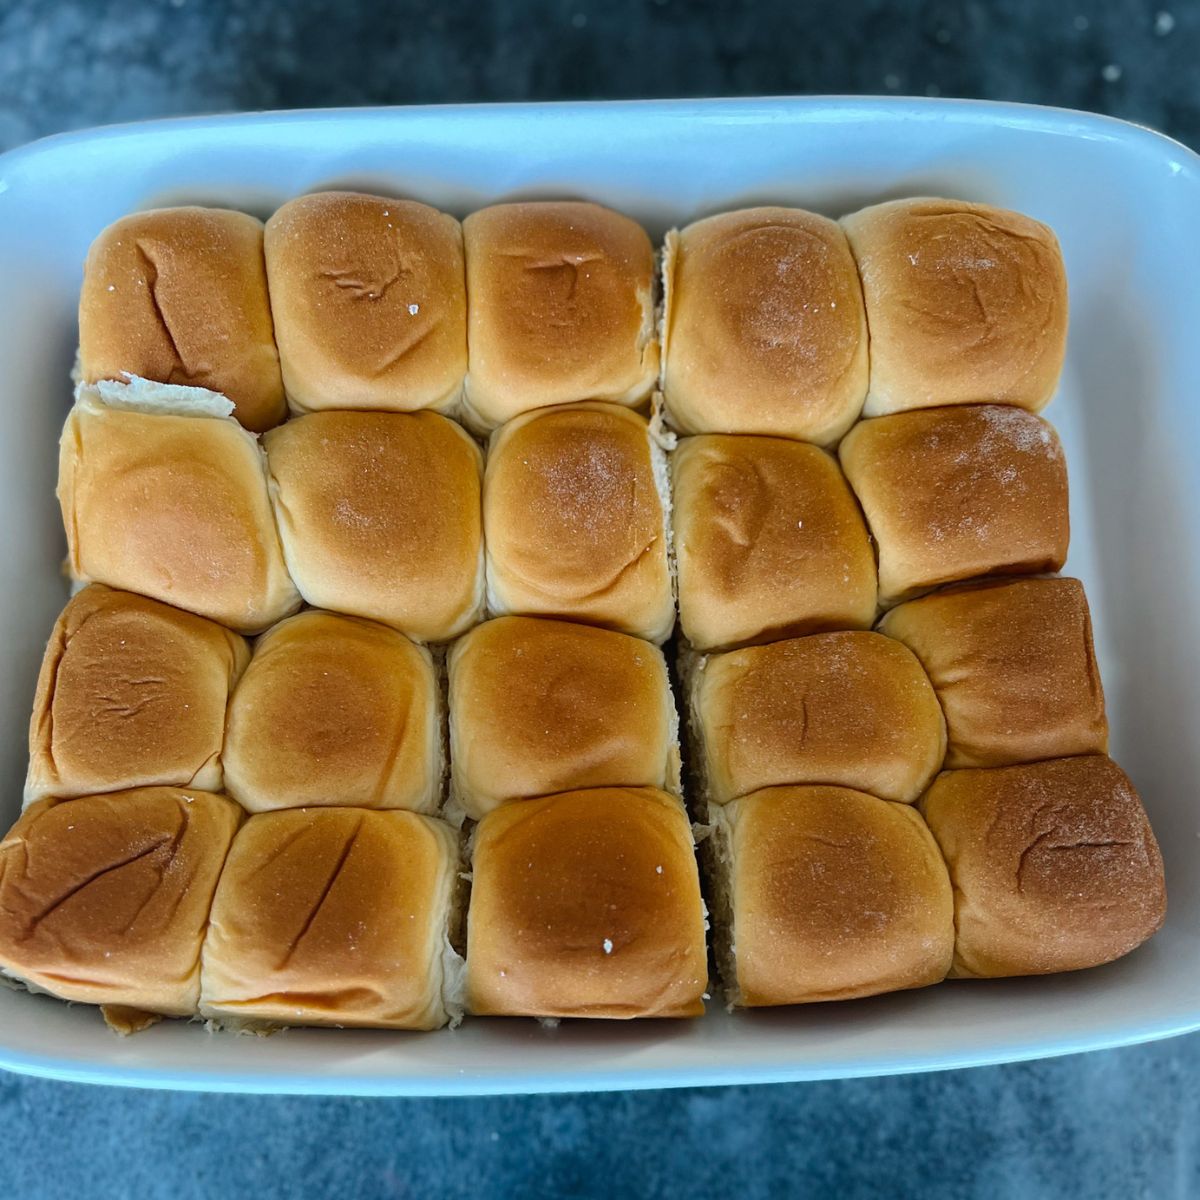 20 Hawaiian sweet rolls in a baking dish.